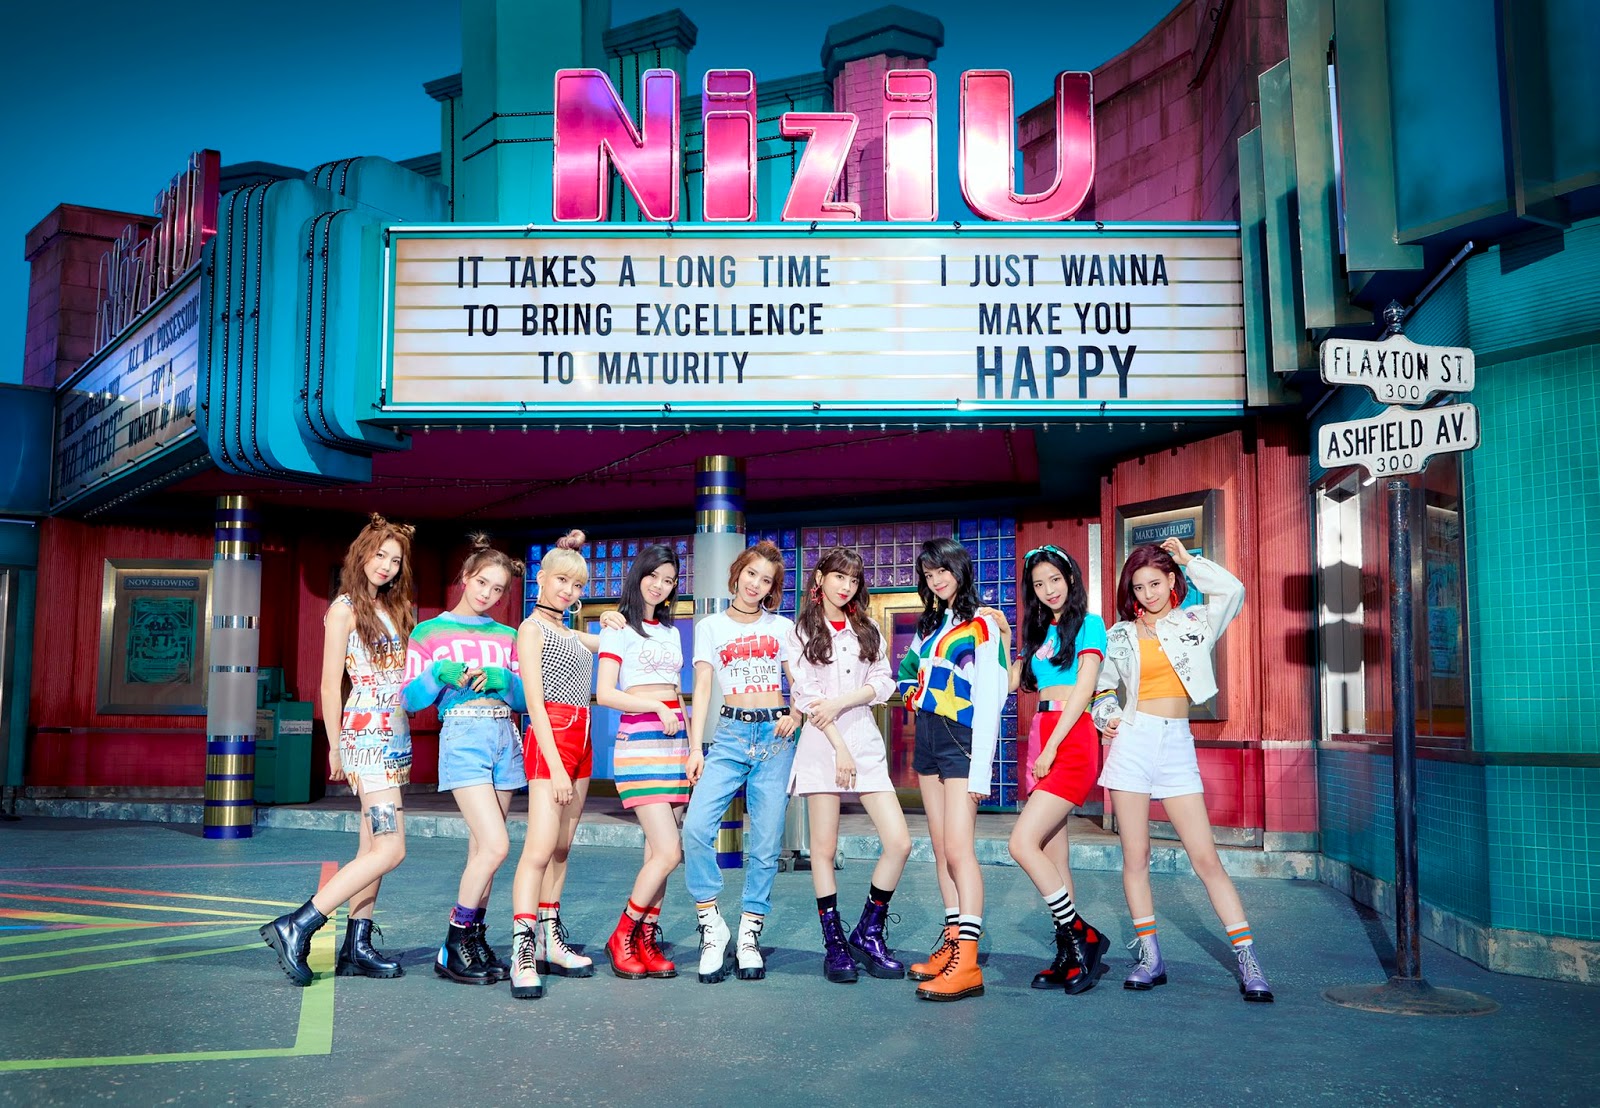 Inilah MV NiziU "Make you happy"